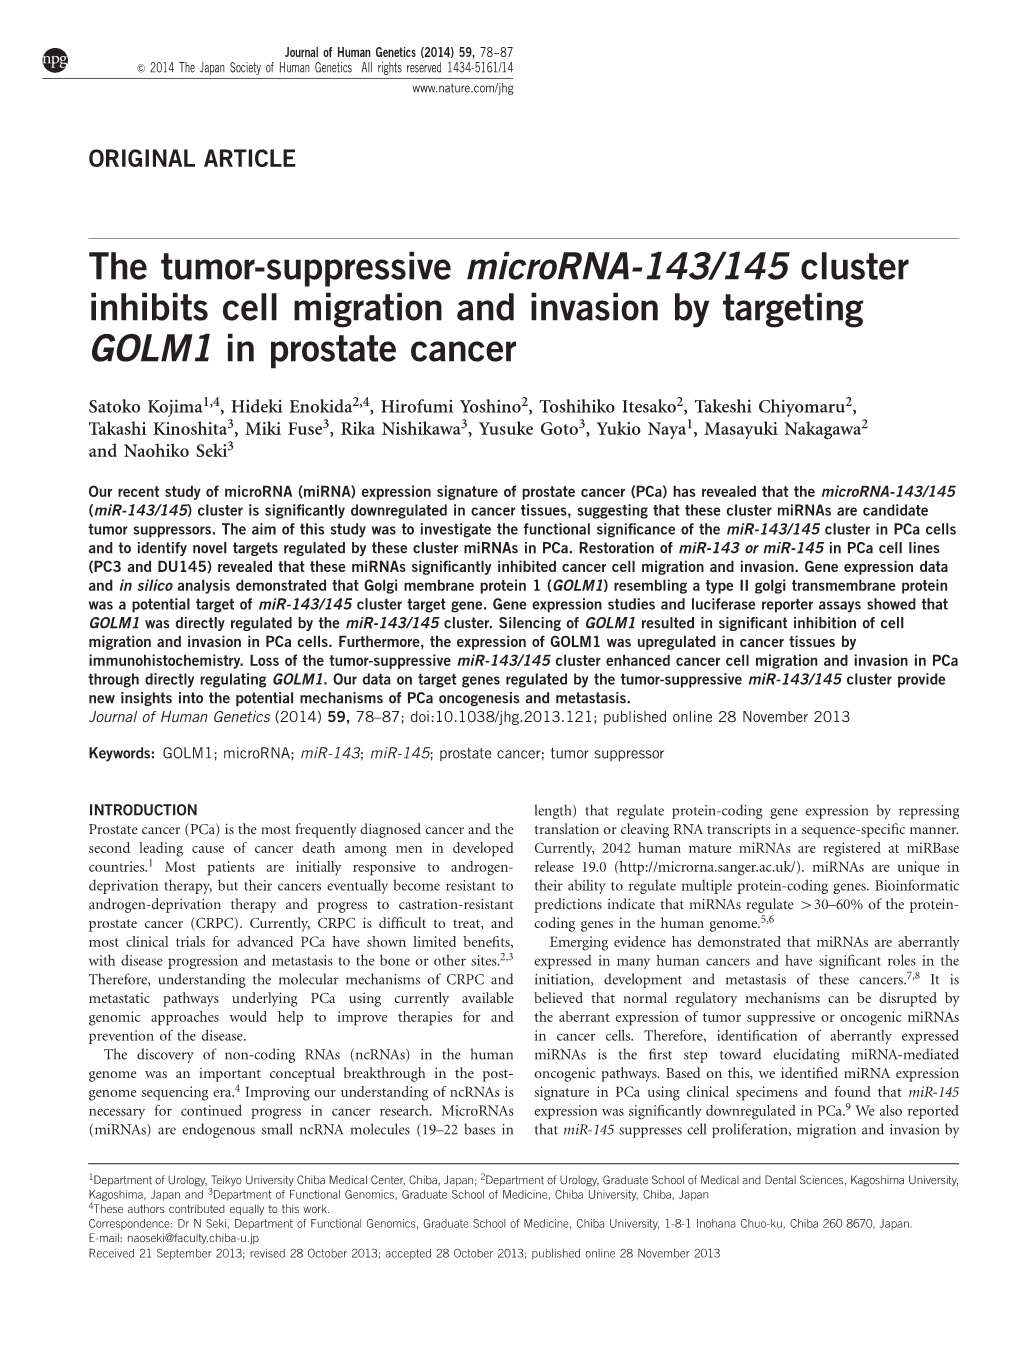 The Tumor-Suppressive Microrna-143&Sol